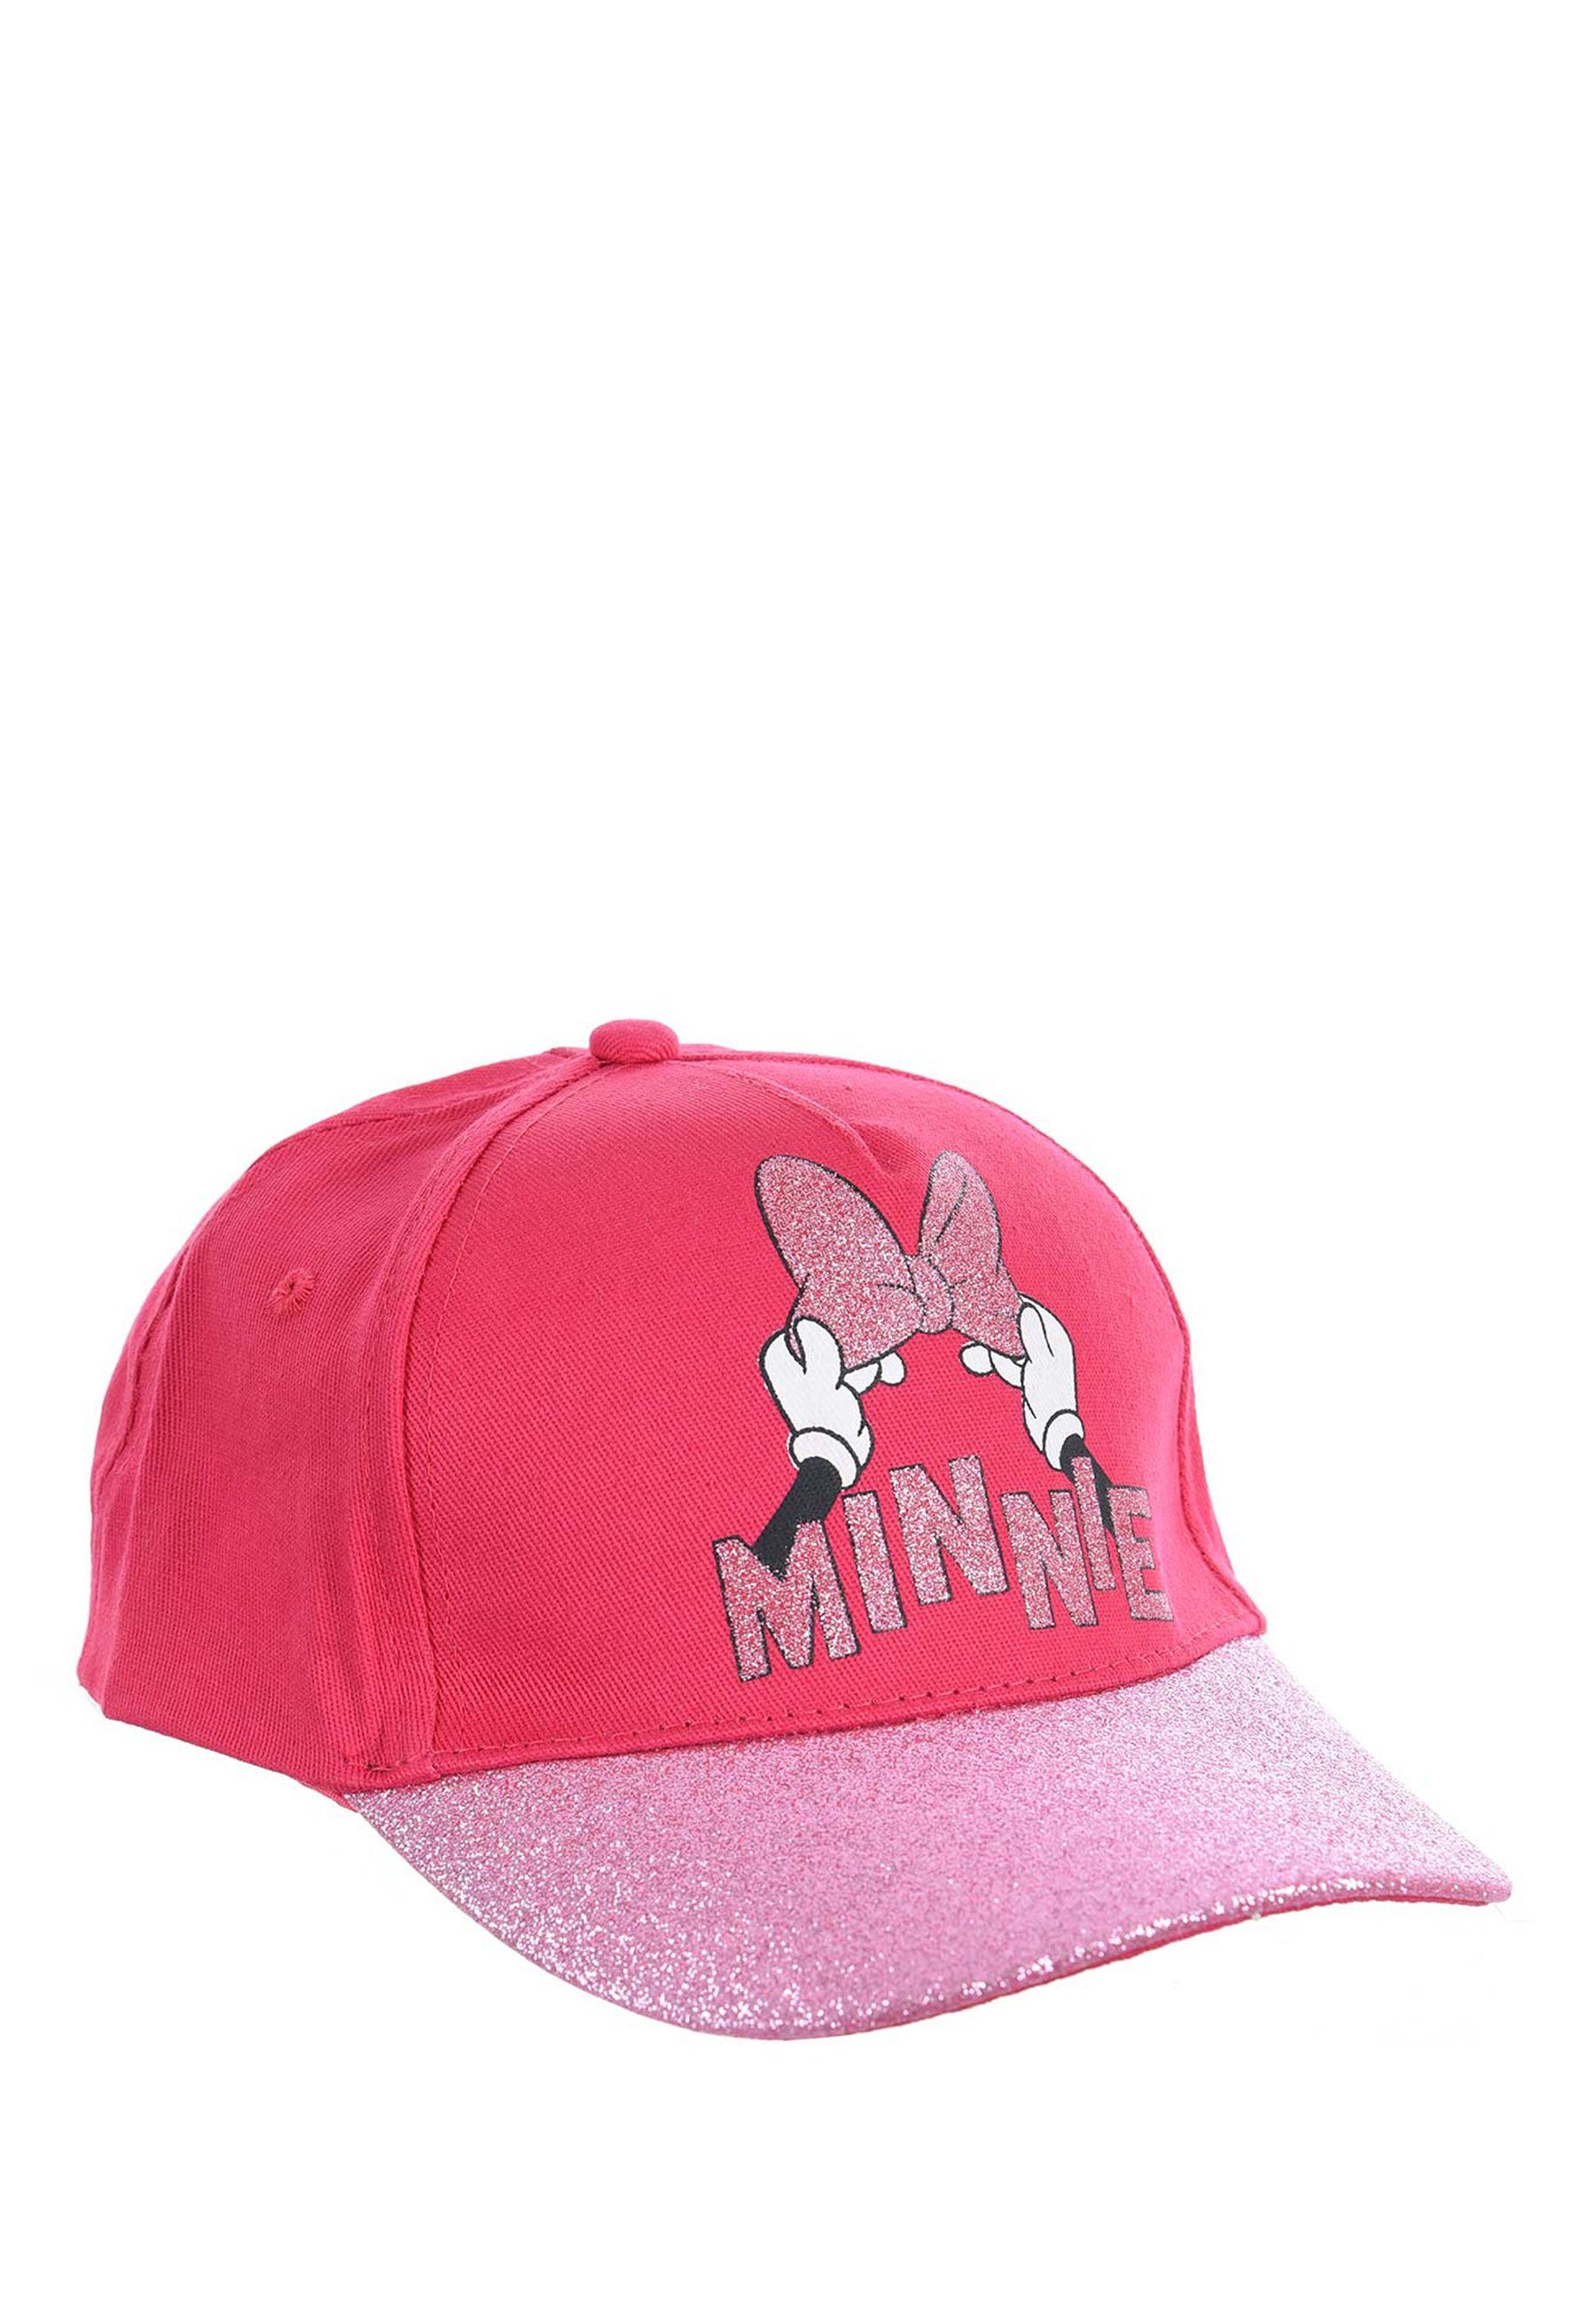 Disney Minnie Mouse Baseball Kappe Cap Mütze Pink